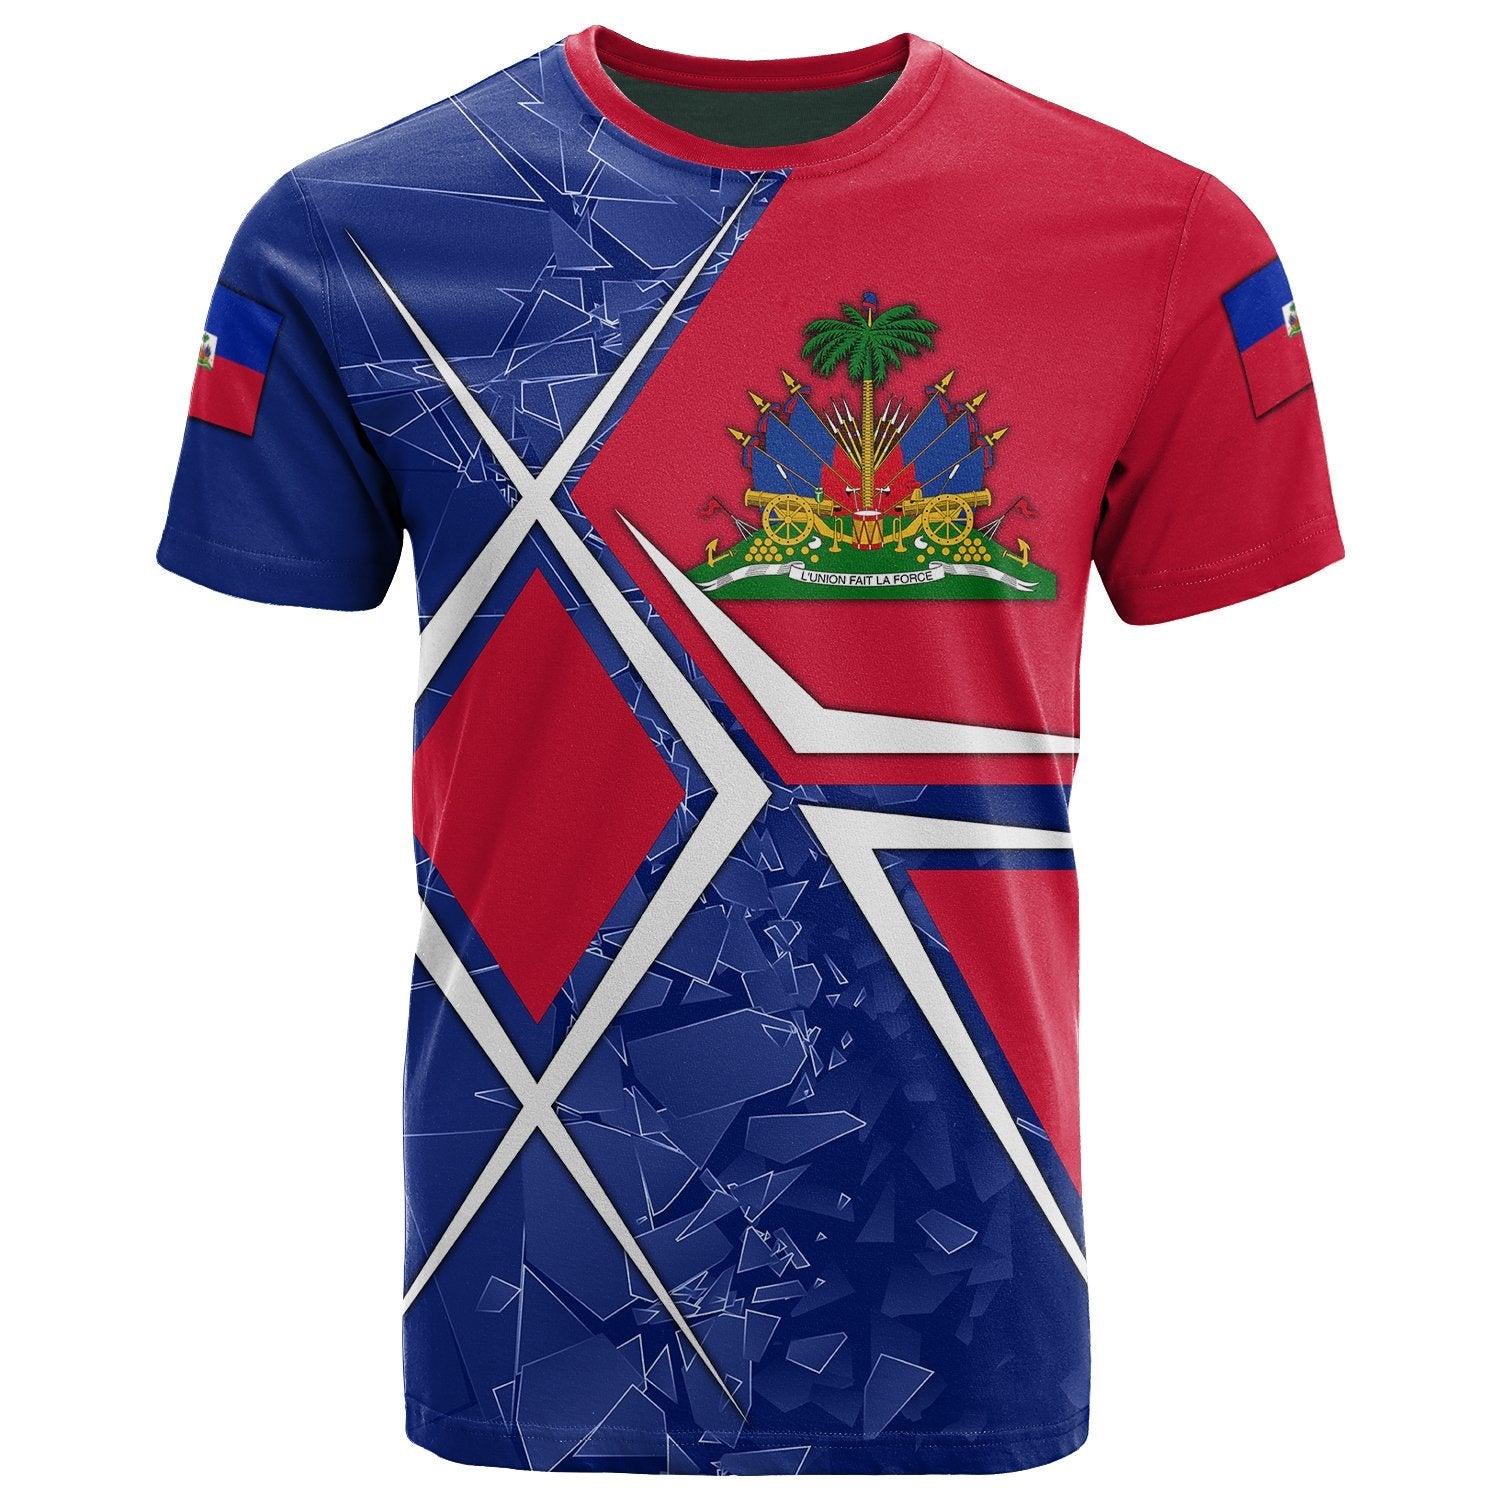 haiti-t-shirt-haiti-legend